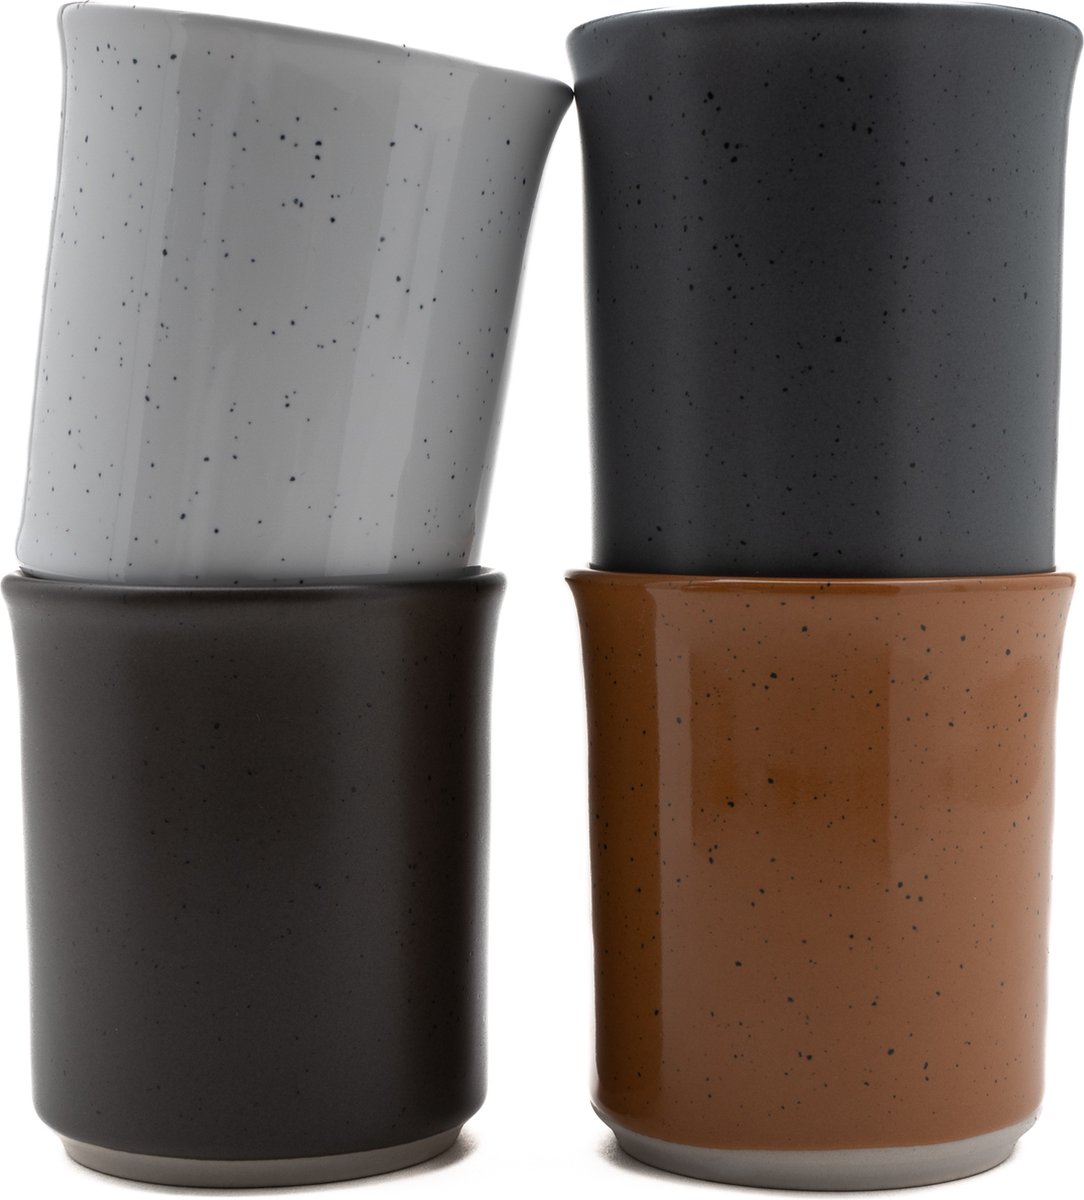 Koffiekopjes - koffiemok - koffiebeker - set van 4 kopjes - 150ML - keramiek - hip en trendy - kado voor hem & haar - Kade171